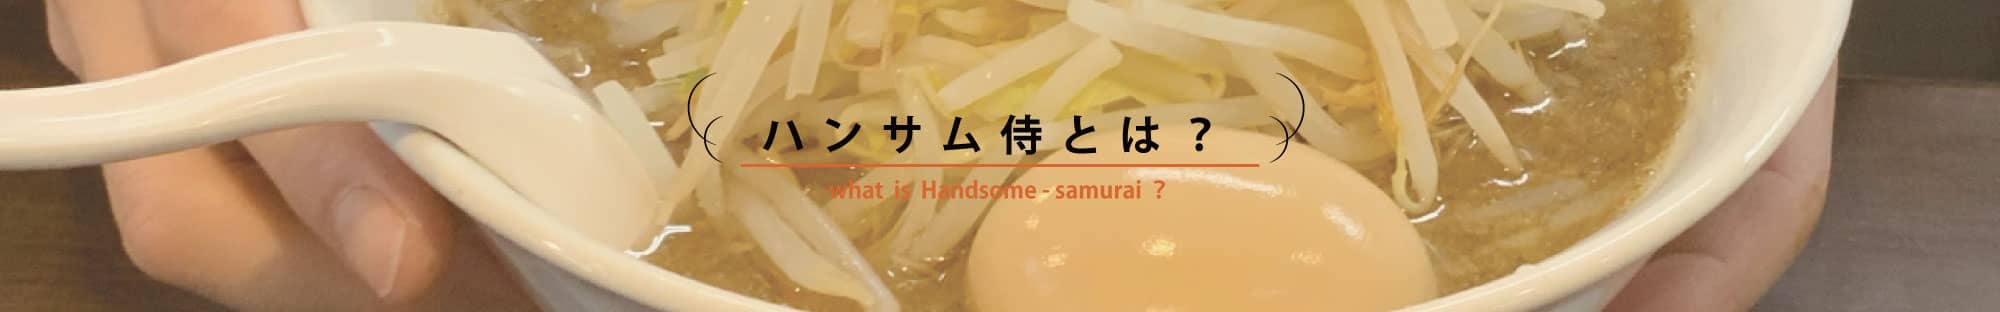 ハンサム侍とは？ what is handsome-samura?